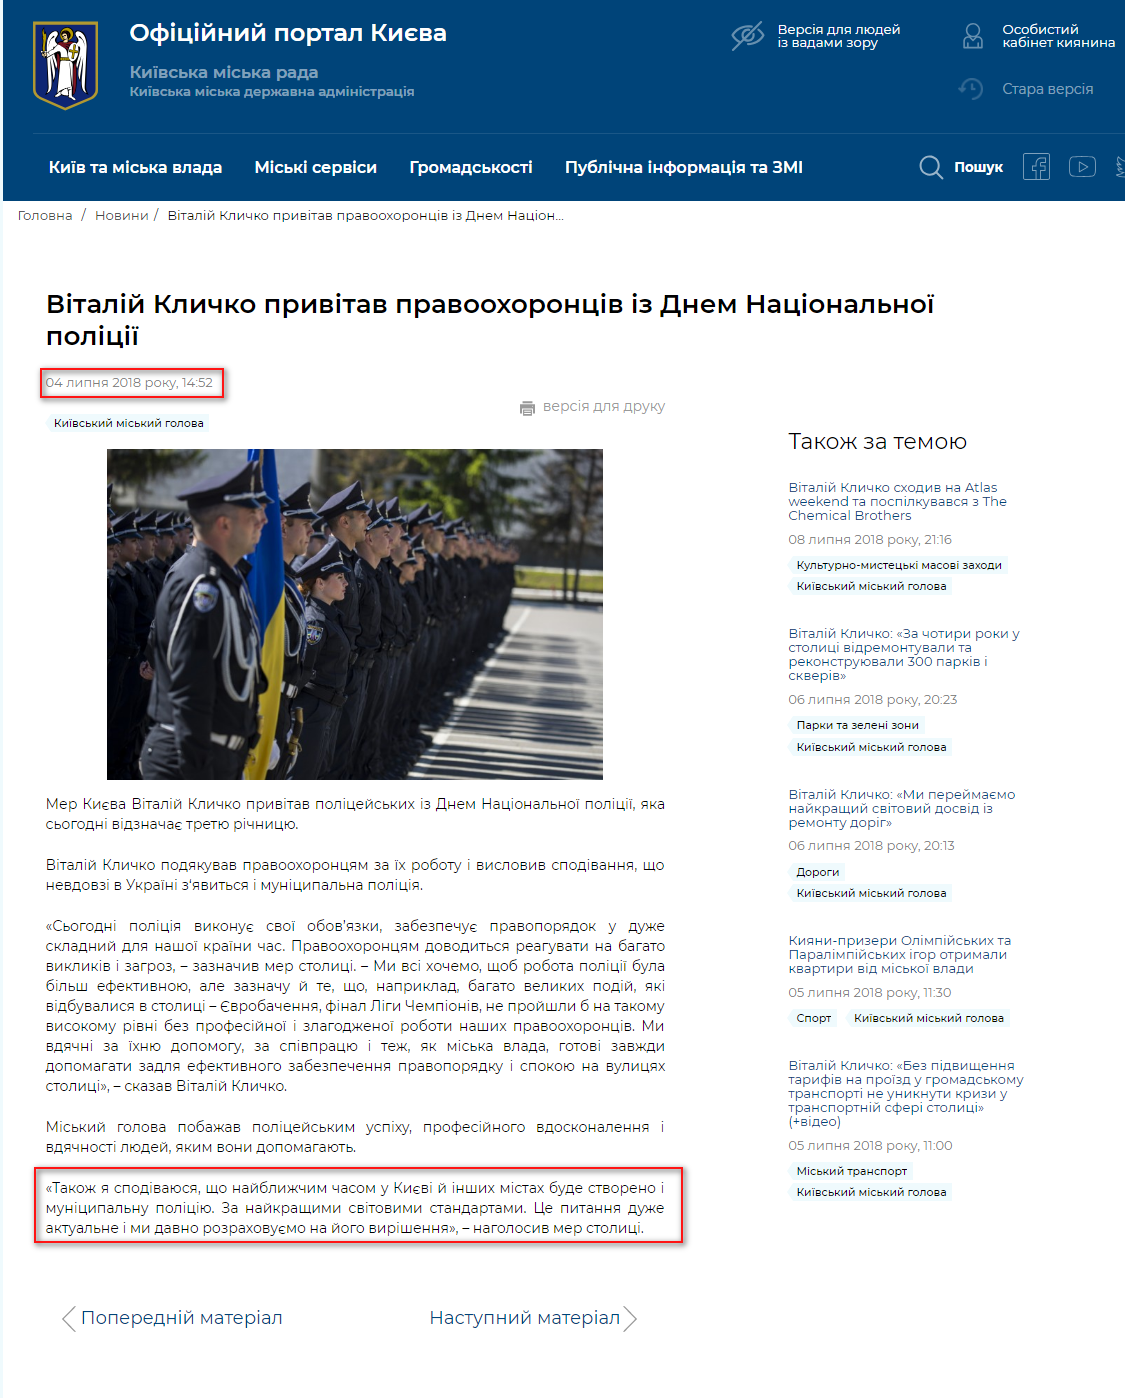 https://kyivcity.gov.ua/news/vitaliy_klichko_privitav_pravookhorontsiv_iz_dnem_natsionalno_politsi.html